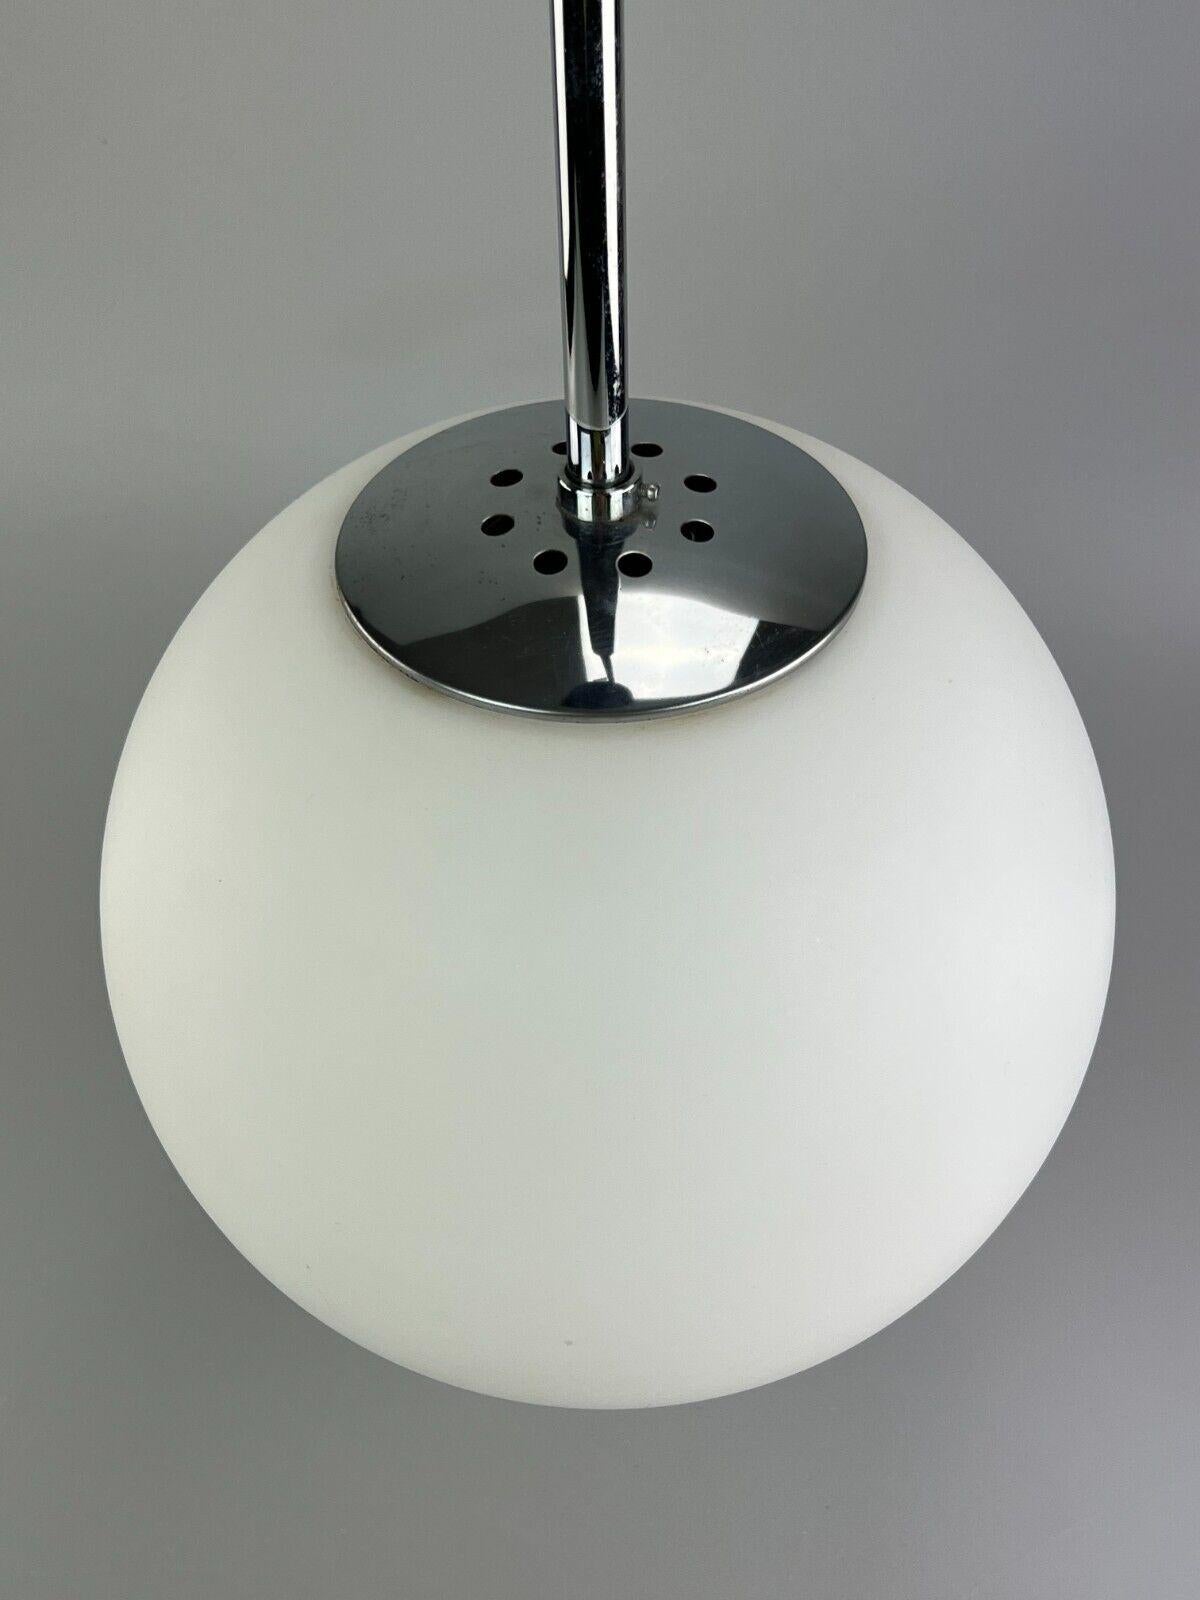 Late 20th Century 60s 70s Lamp Light Ceiling Lamp Limburg Spherical Lamp Ball Design